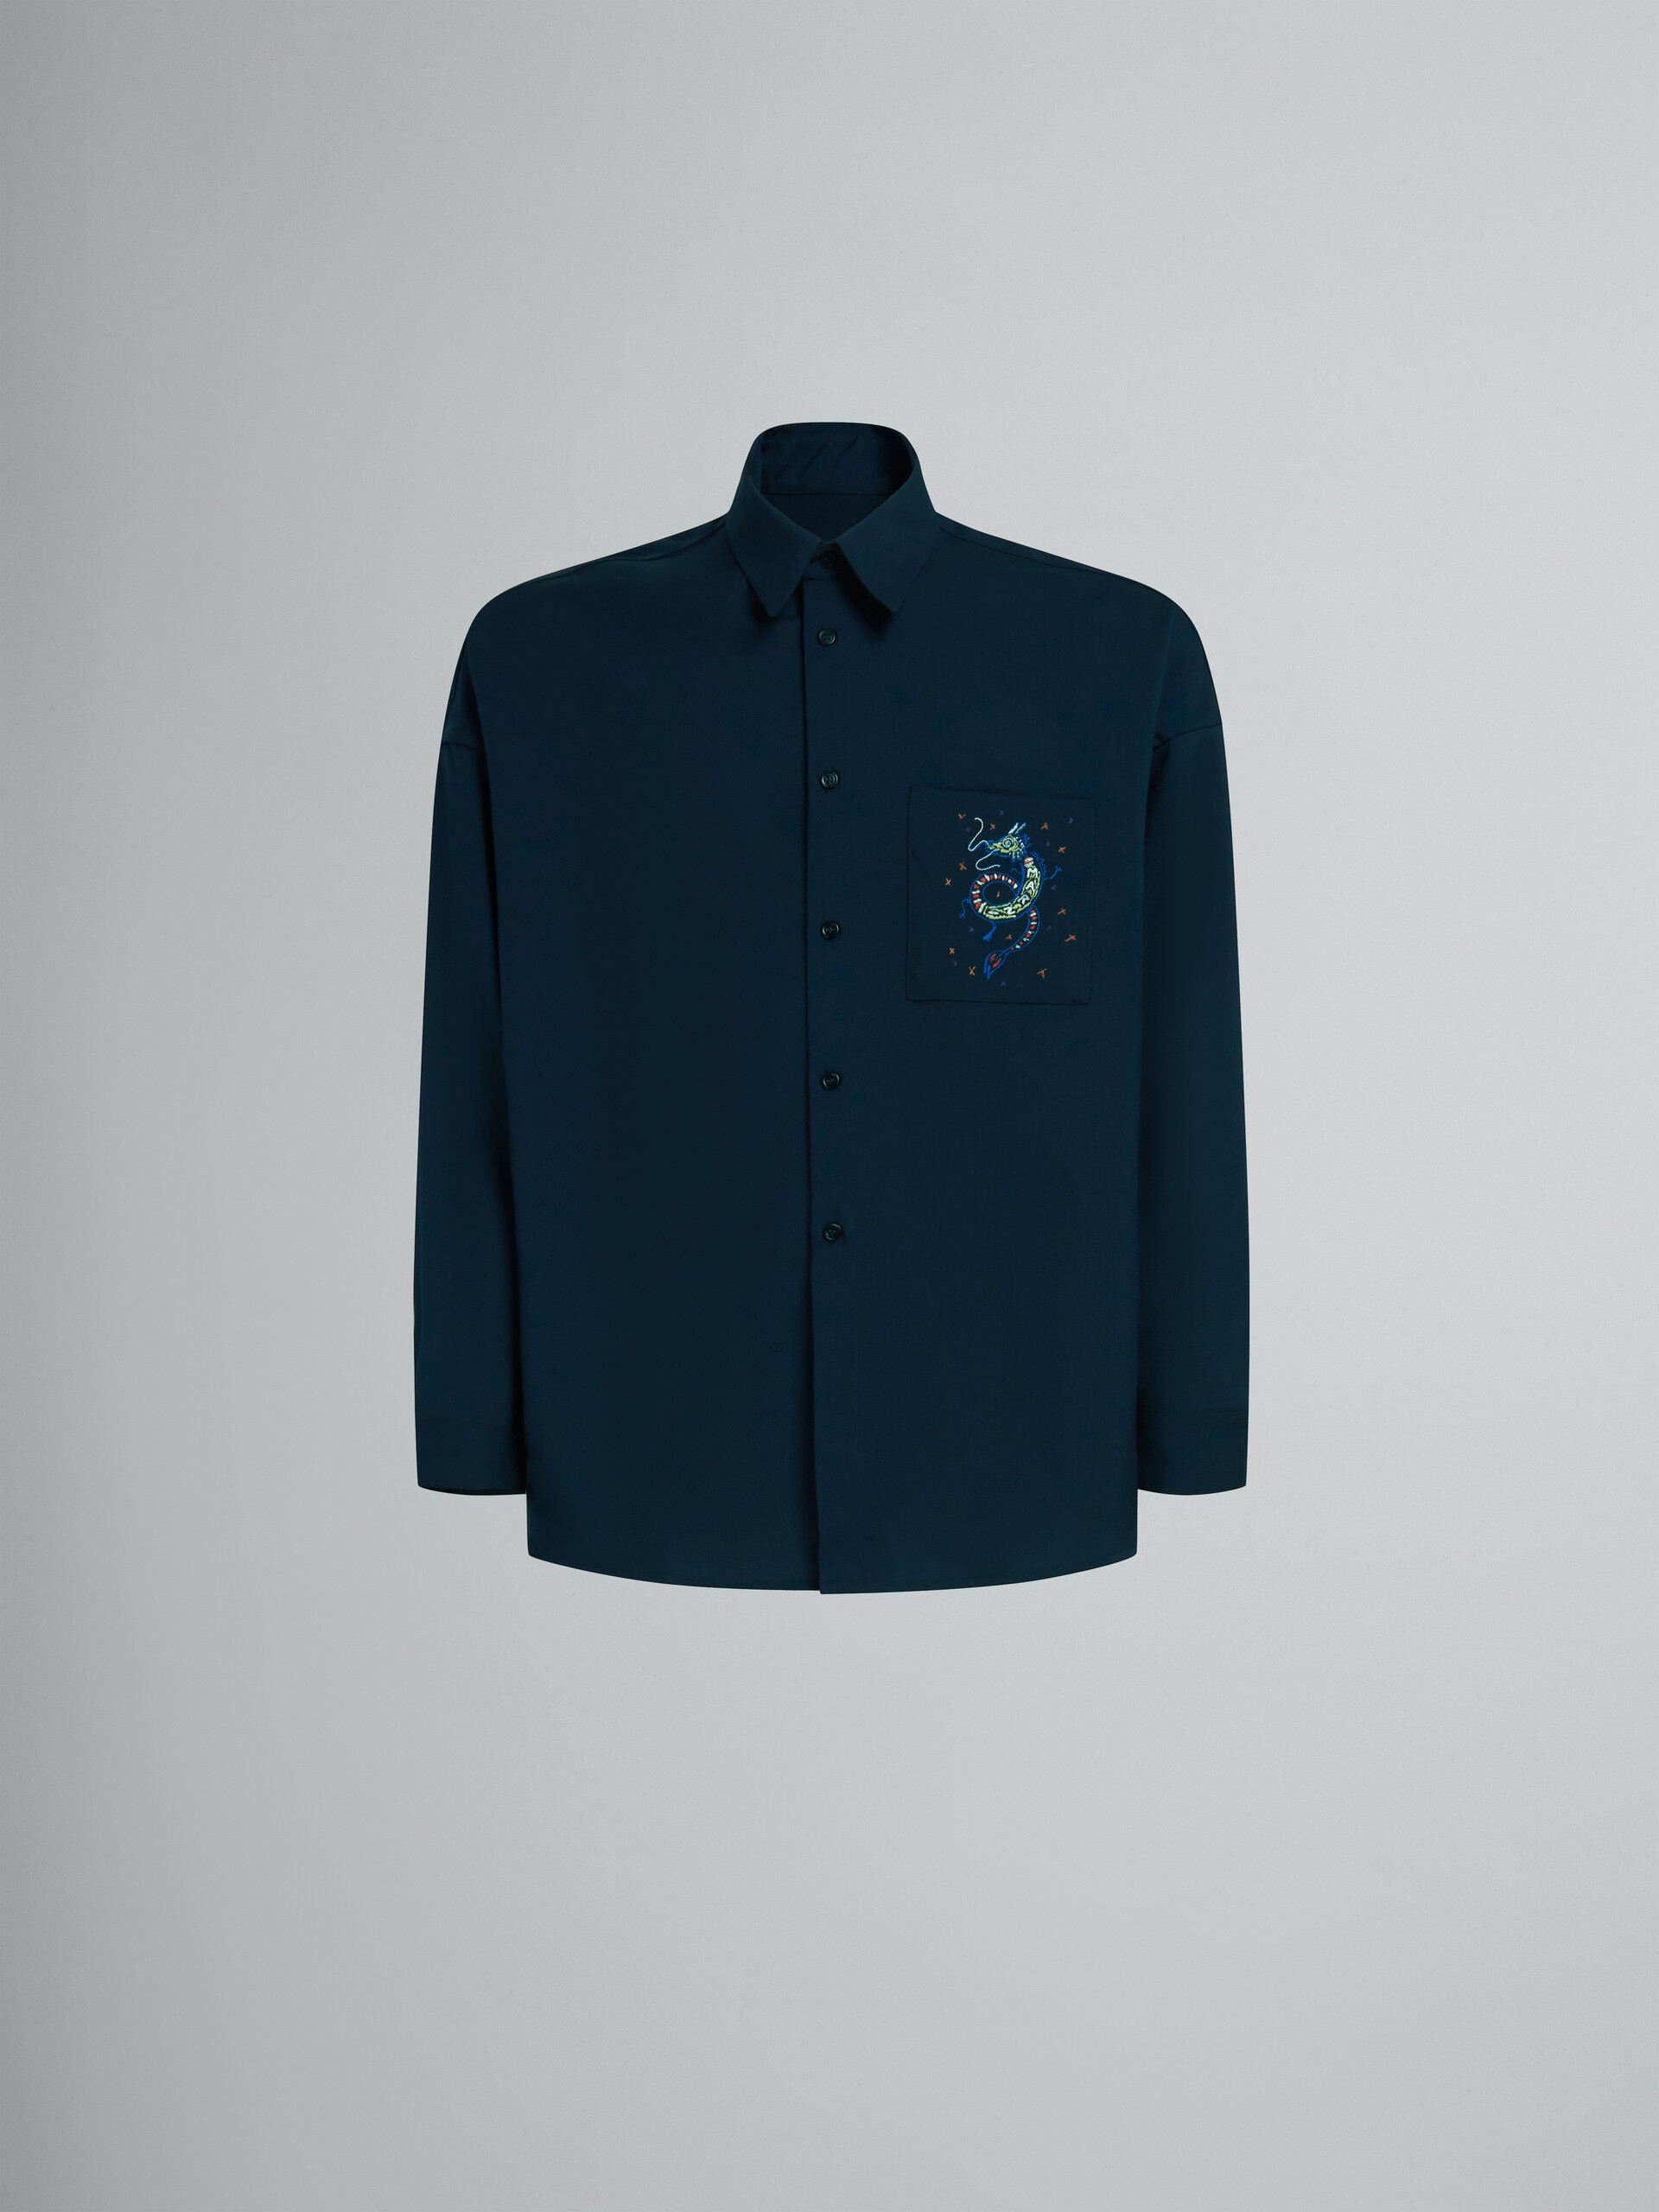 Chemise en laine bleu profond avec dragon brodé - Chemises - Image 1